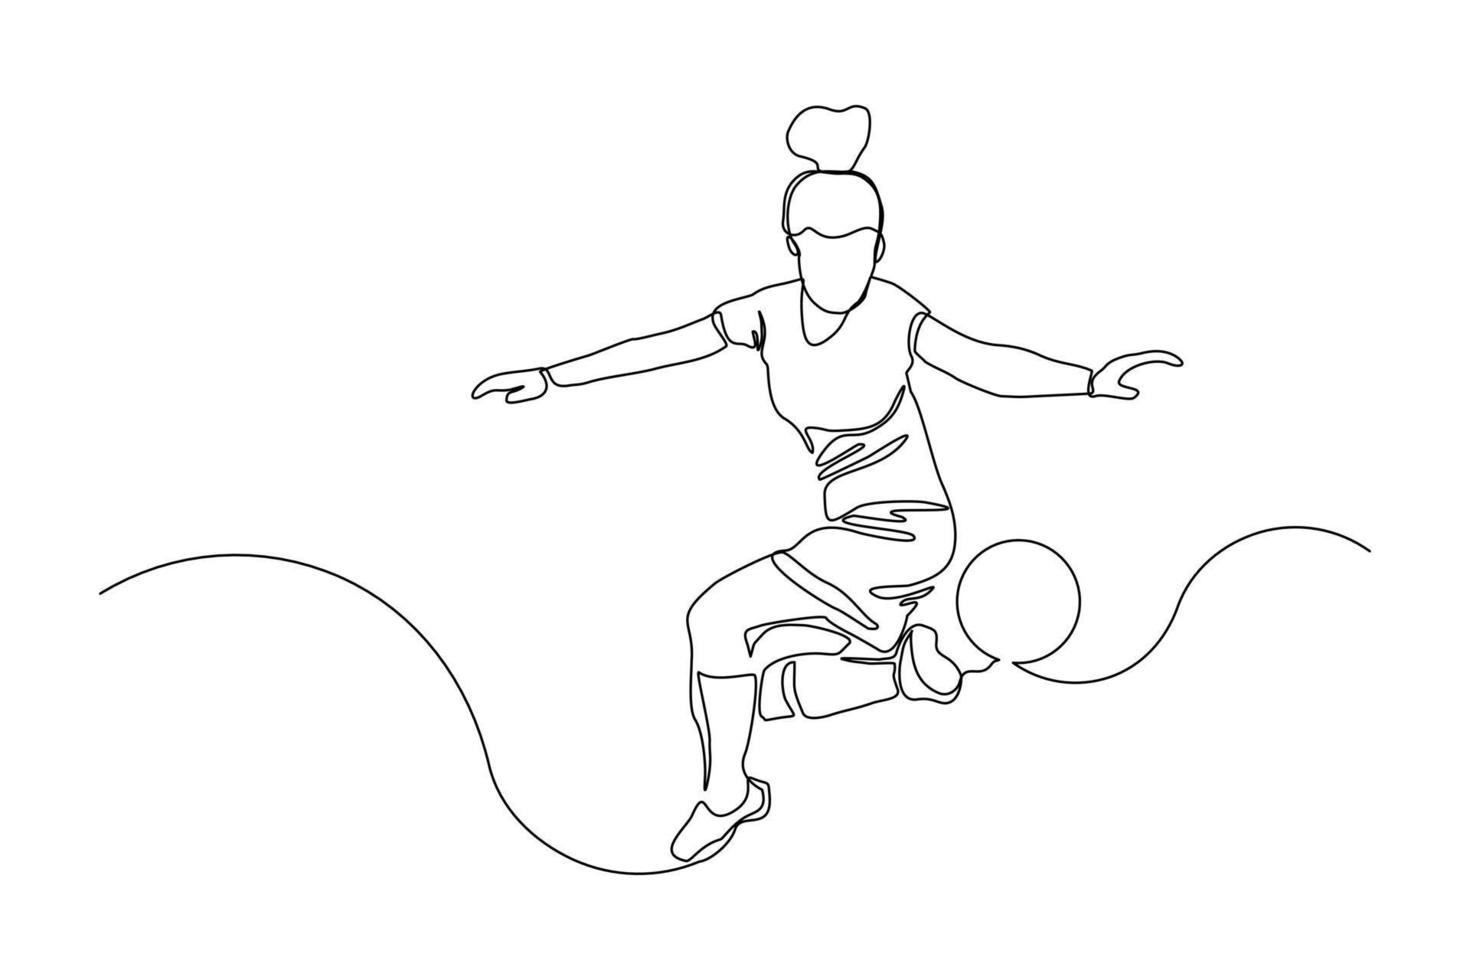 dessin en ligne continu d'un joueur de football qui donne un coup de pied au ballon. dessin au trait unique d'une jeune femme joueuse de football dribblant et jonglant avec une balle. illustration vectorielle vecteur